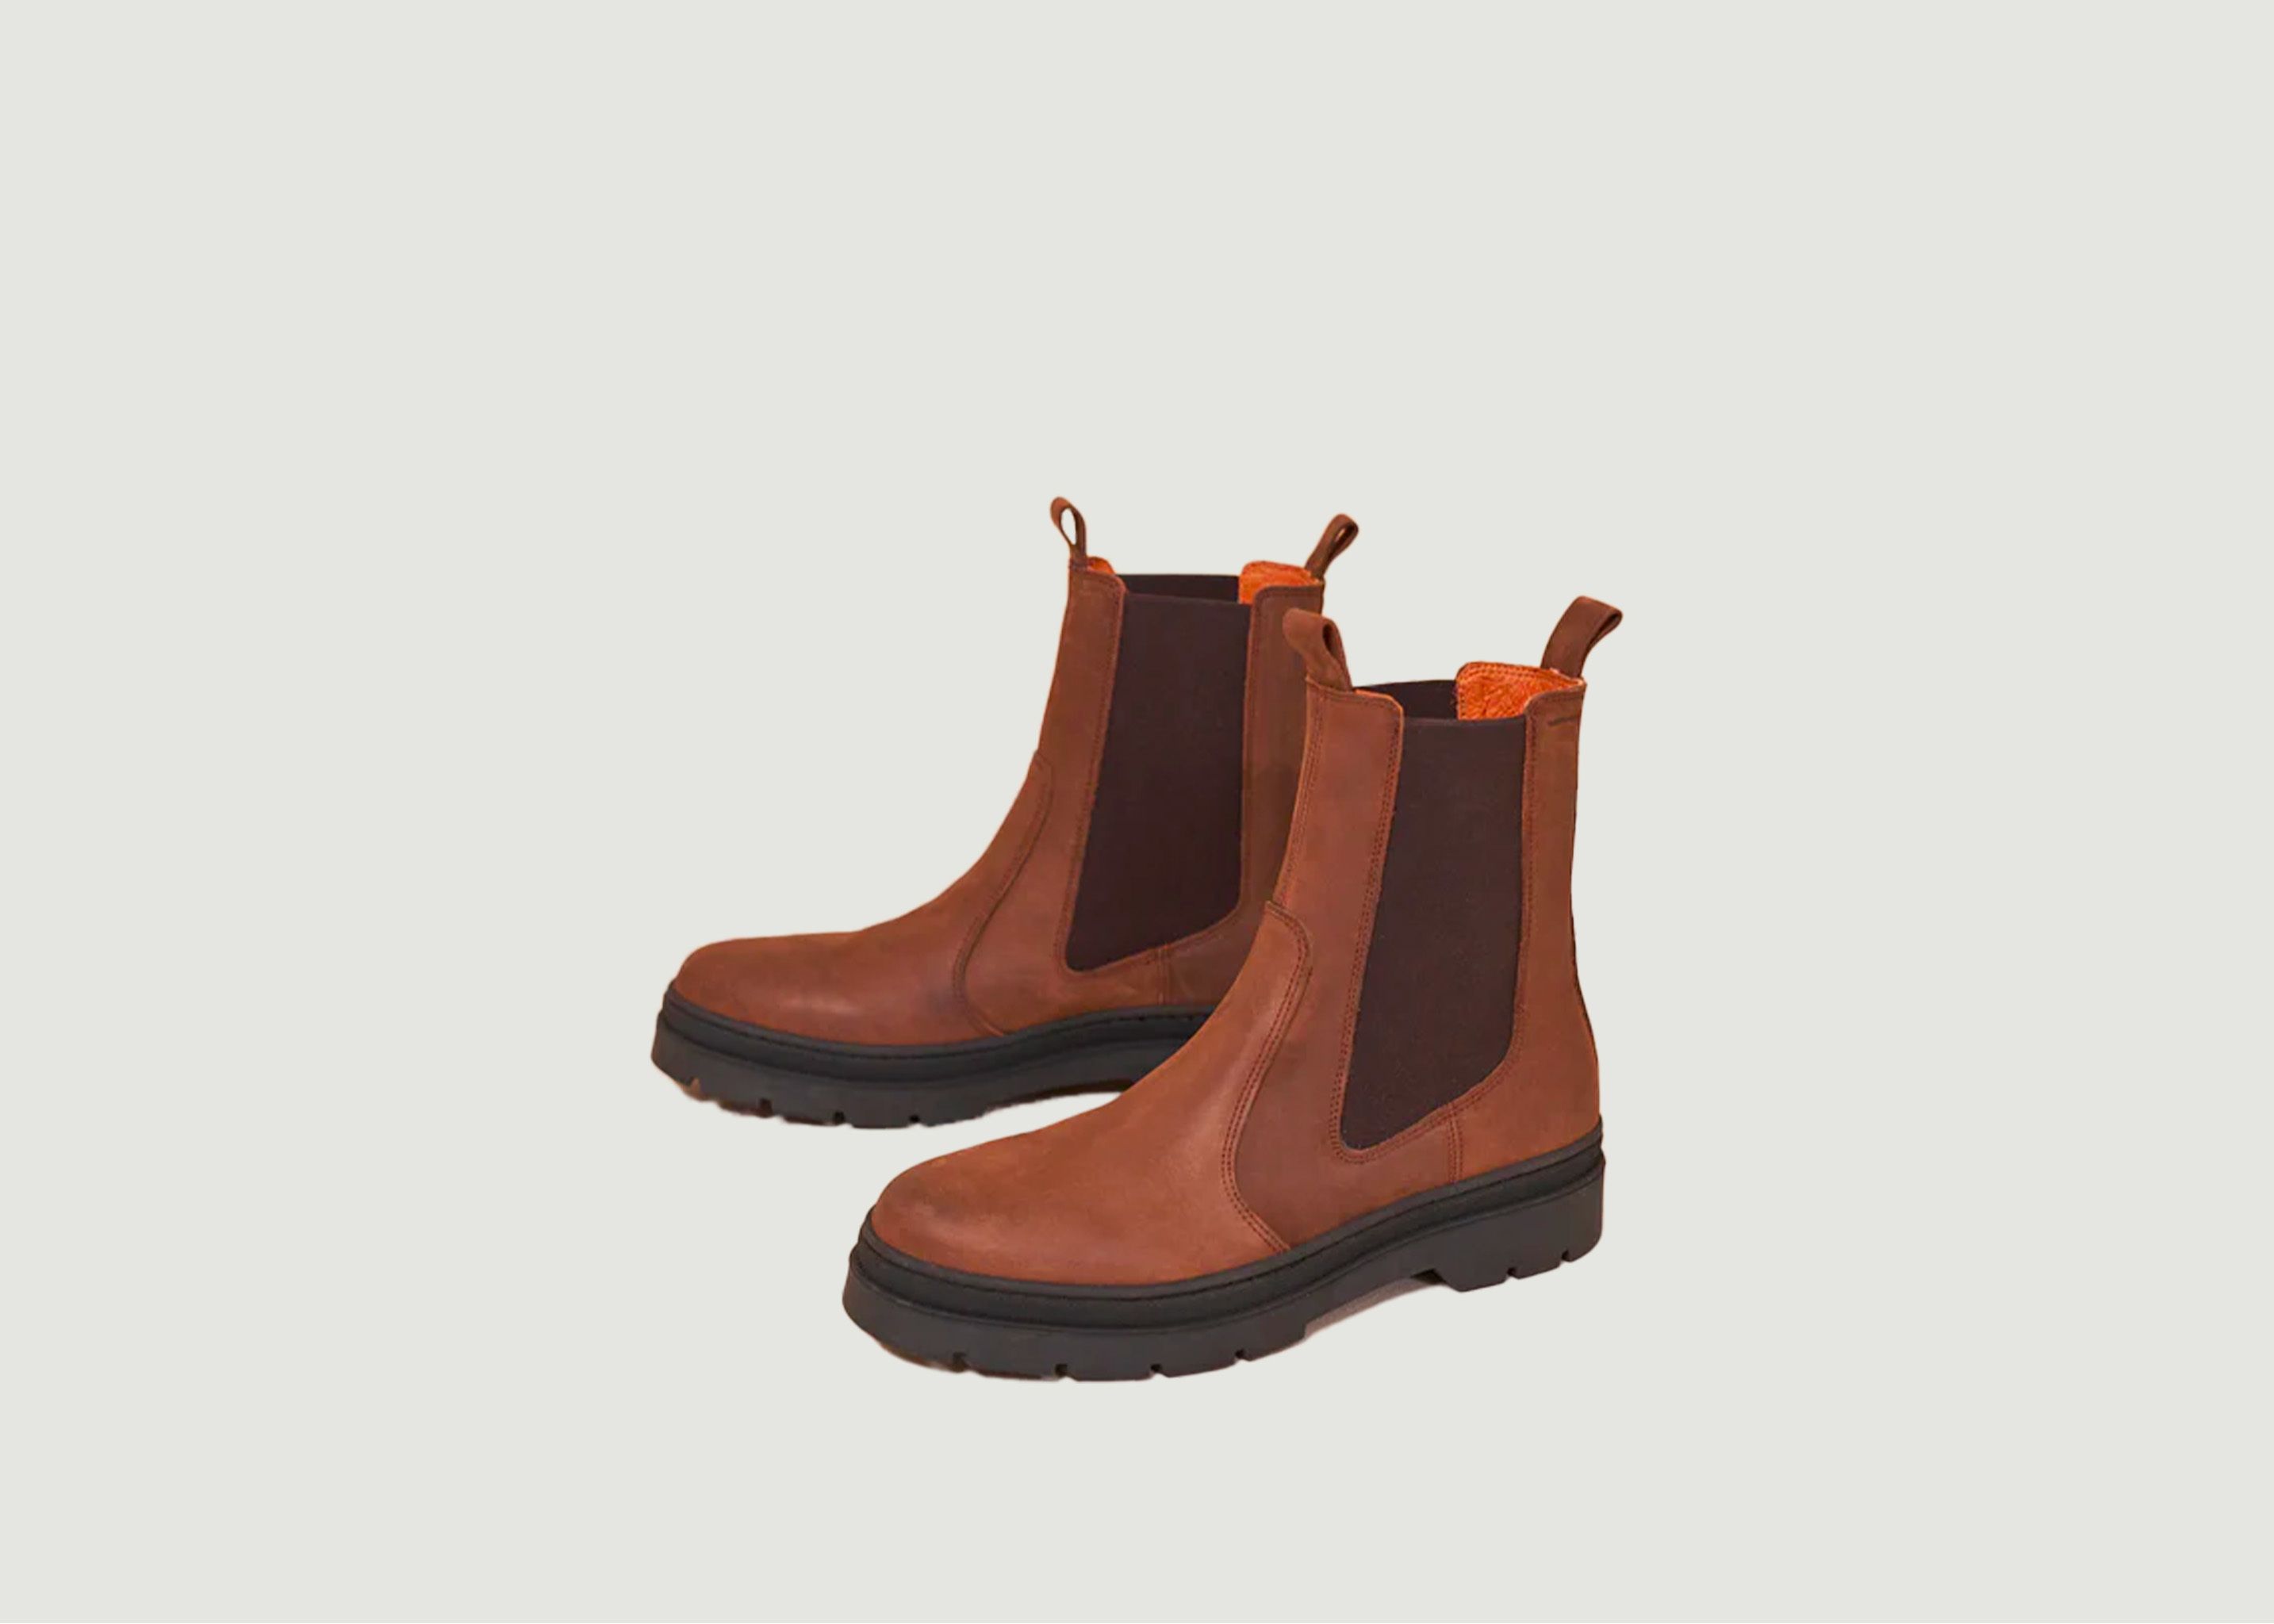 Thomas leather boots - M.Moustache